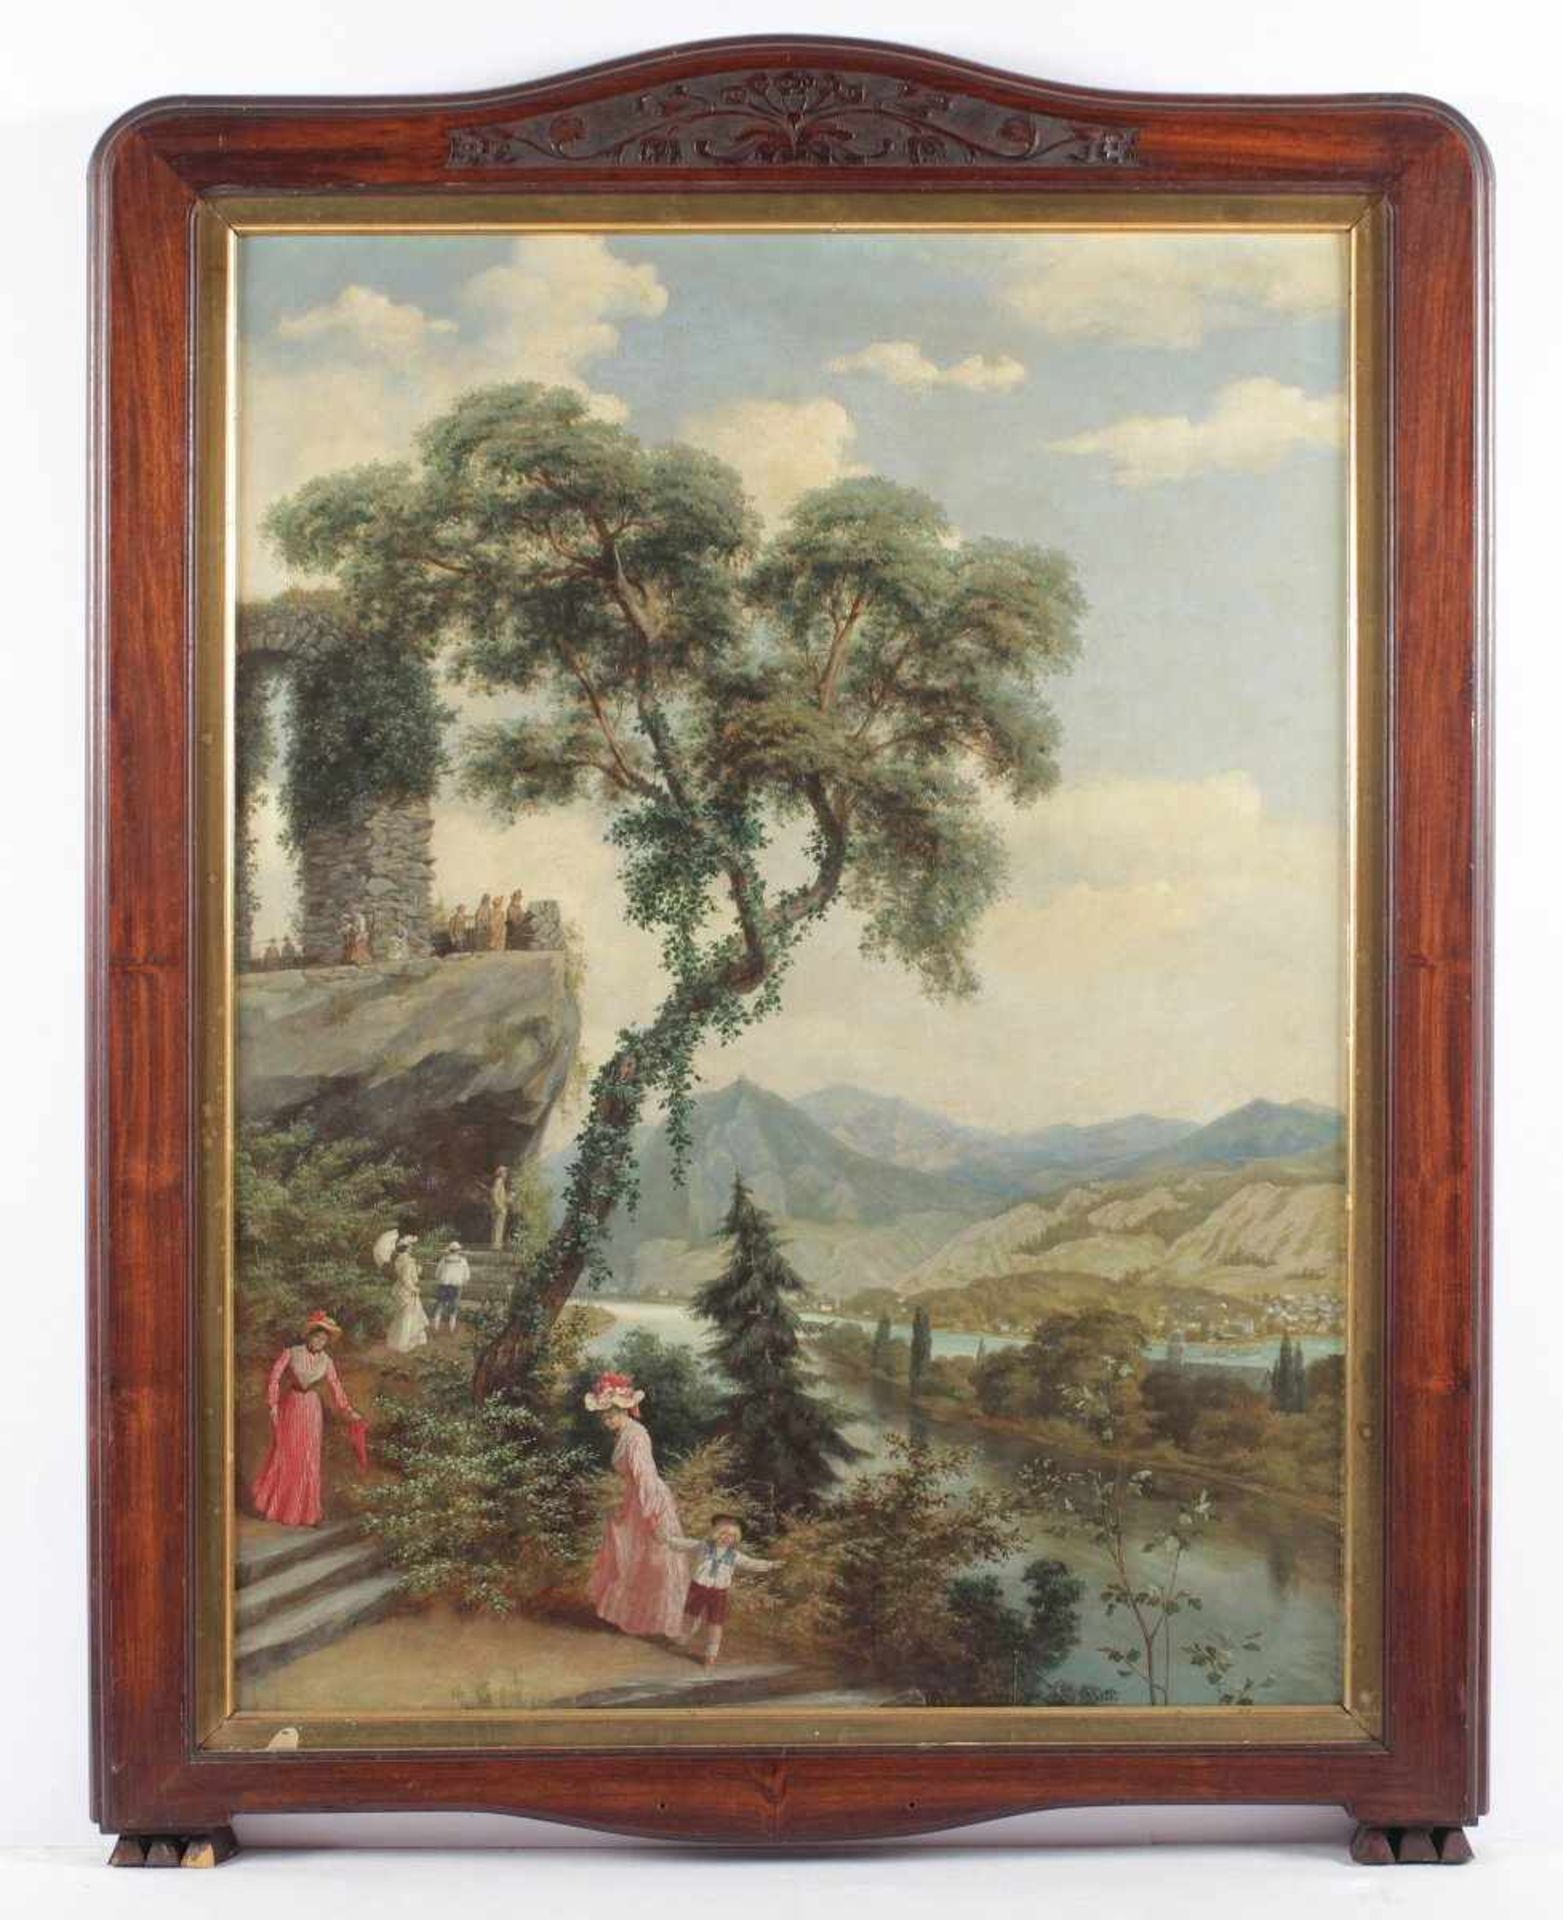 PALM (Maler um 1900), "Blick vom Rolandsbogen auf das Rheintal", Öl/Lwd., 80 x 60, unten links